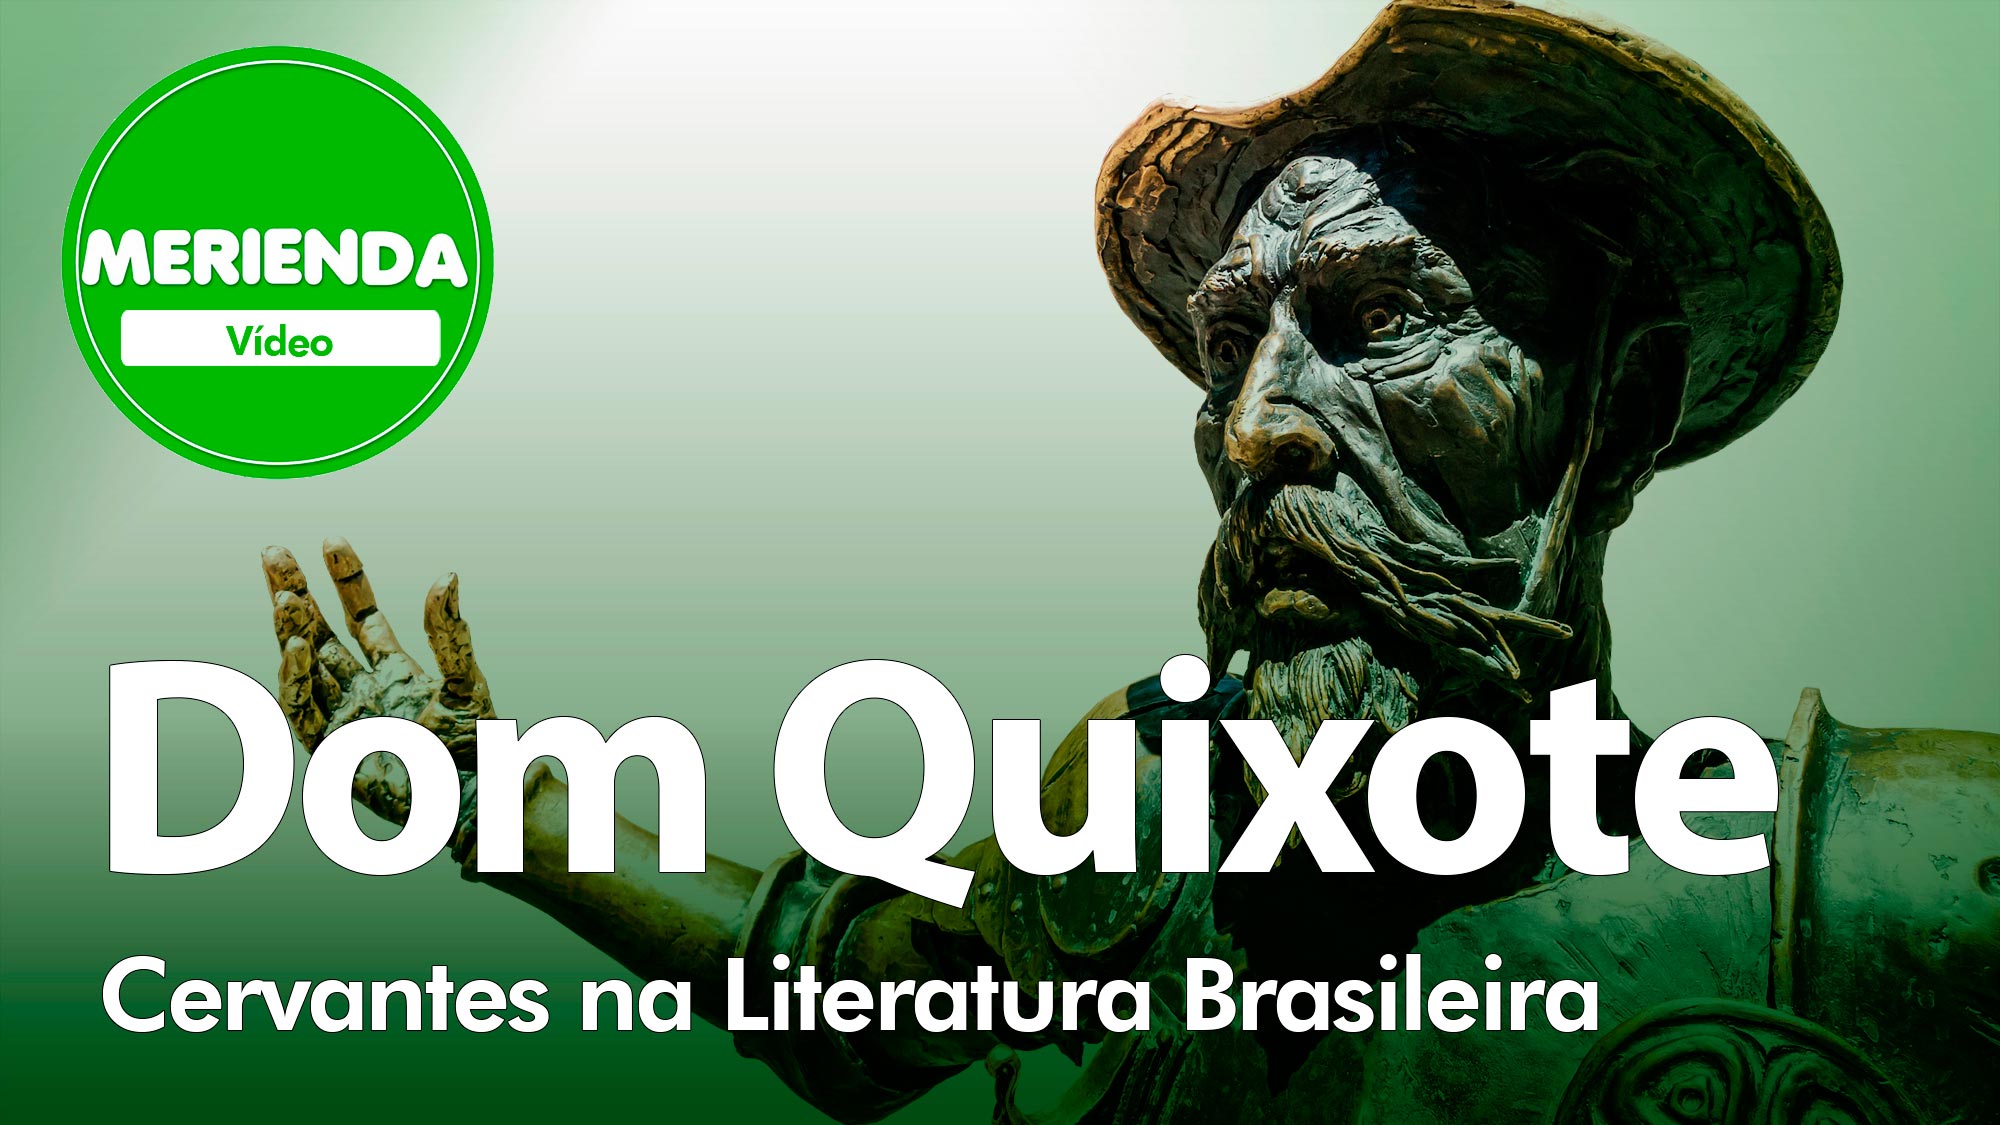 Capa do programa mostra escultura de Dom Quixote. Está escrito "Dom Quixote - Cervantes na Literatura Brasileira"